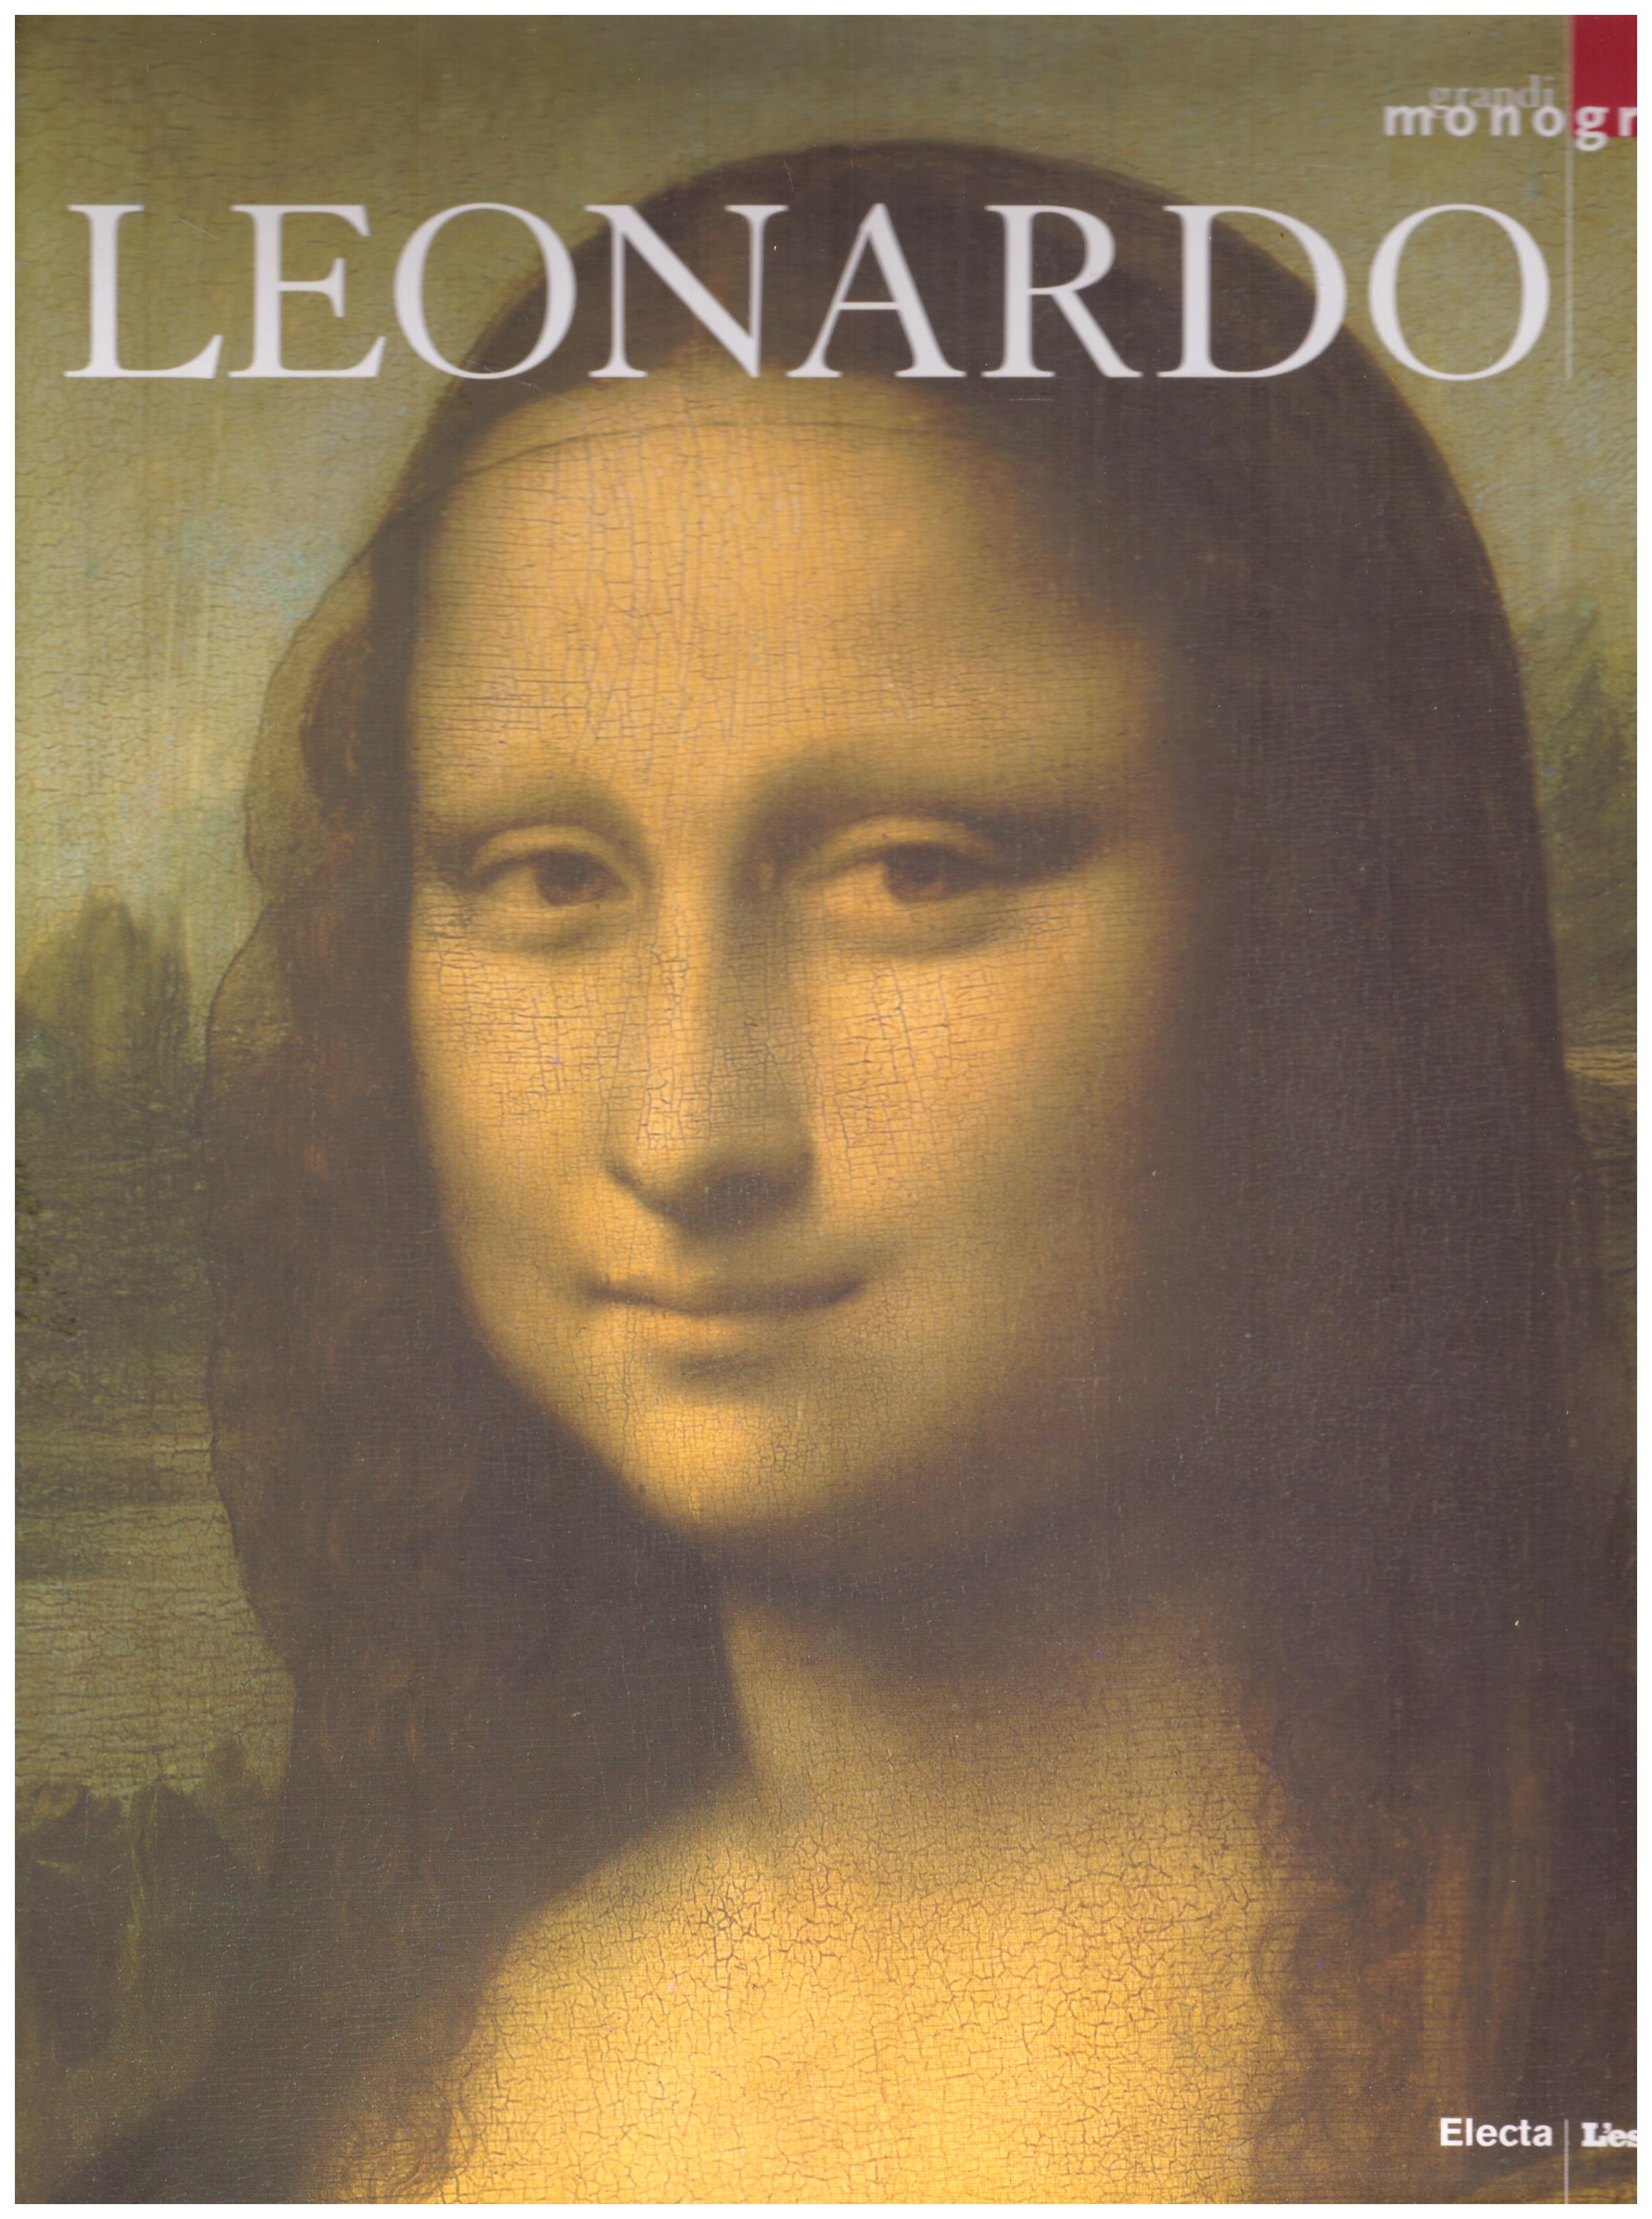 Titolo: Grandi monografie, Leonardo Autore: AA.VV.  Editore: Electa, L'espresso 2006